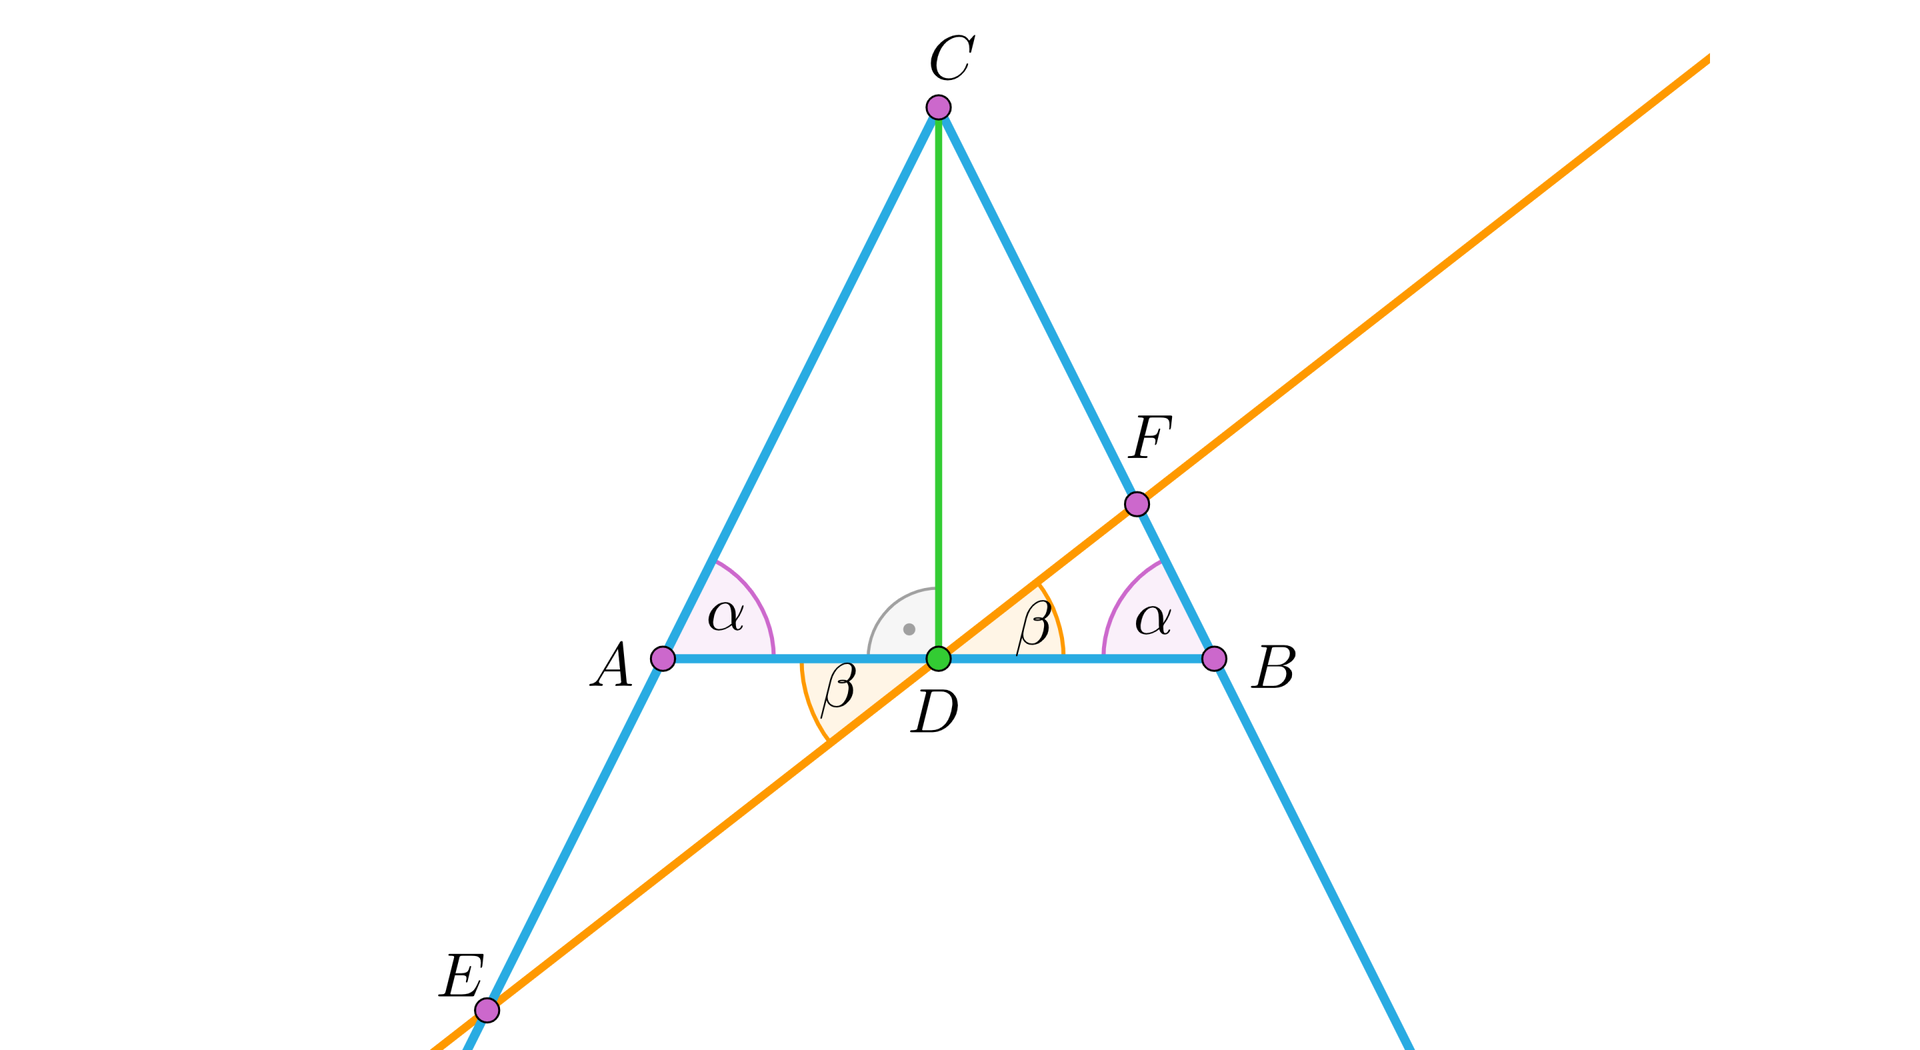 Na ilustracji przedstawiono kąt o wierzchołku C, którego ramiona przechodzą przez punkty A i B. Po połączeniu punktów A i B powstał trójkąt równoramienny. Zaznaczono kąty alfa przy wierzchołku A, oraz B. Z wierzchołka C opuszczono dwusieczną kąta ACB do podstawy trójkąta AB w punkcie D. Na ramieniu BC zaznaczono punkt F. Narysowano prostą przechodzącą przez punkt F, D, oraz przecinającą przeciwległe ramię kąta w punkcie E. Kąty BDF, oraz EDA oznaczono beta.